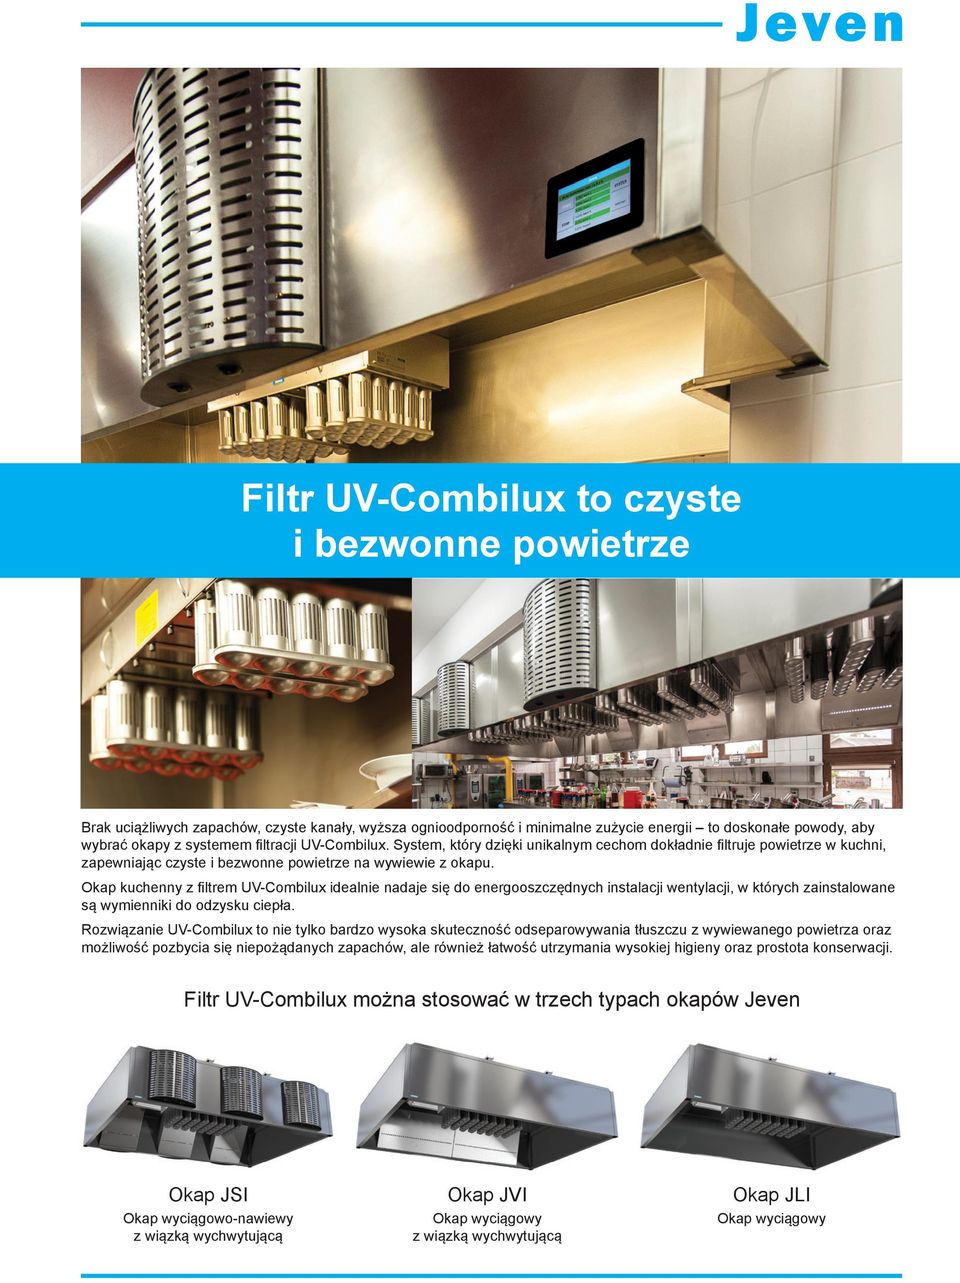 Okap kuchenny z filtrem UV-Combilux idealnie nadaje się do energooszczędnych instalacji wentylacji, w których zainstalowane są wymienniki do odzysku ciepła.